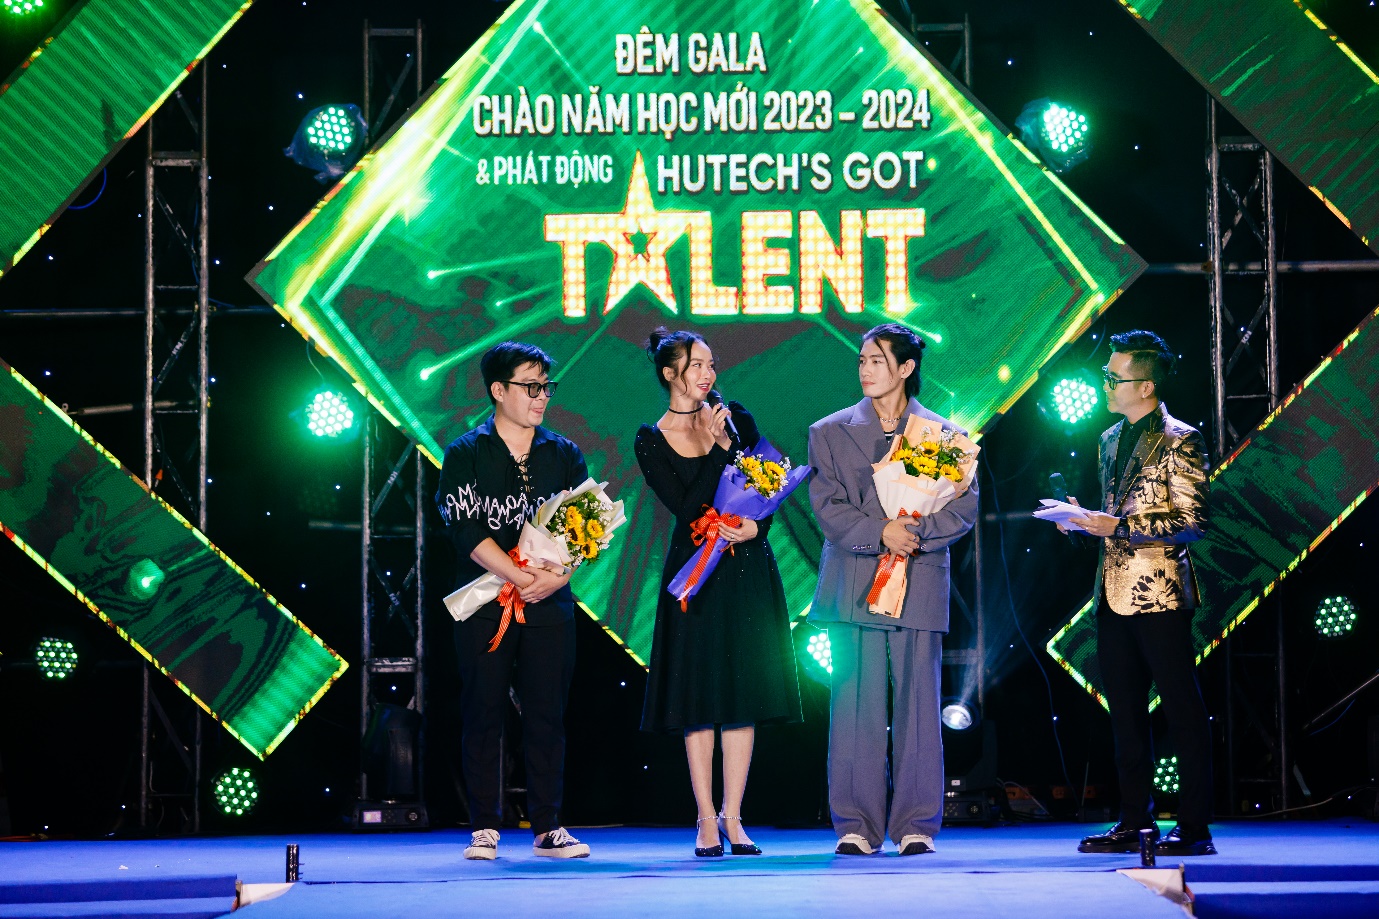 Tưng bừng đêm Gala chào năm học mới và phát động HUTECH's Got Talent 2024 - Ảnh 7.